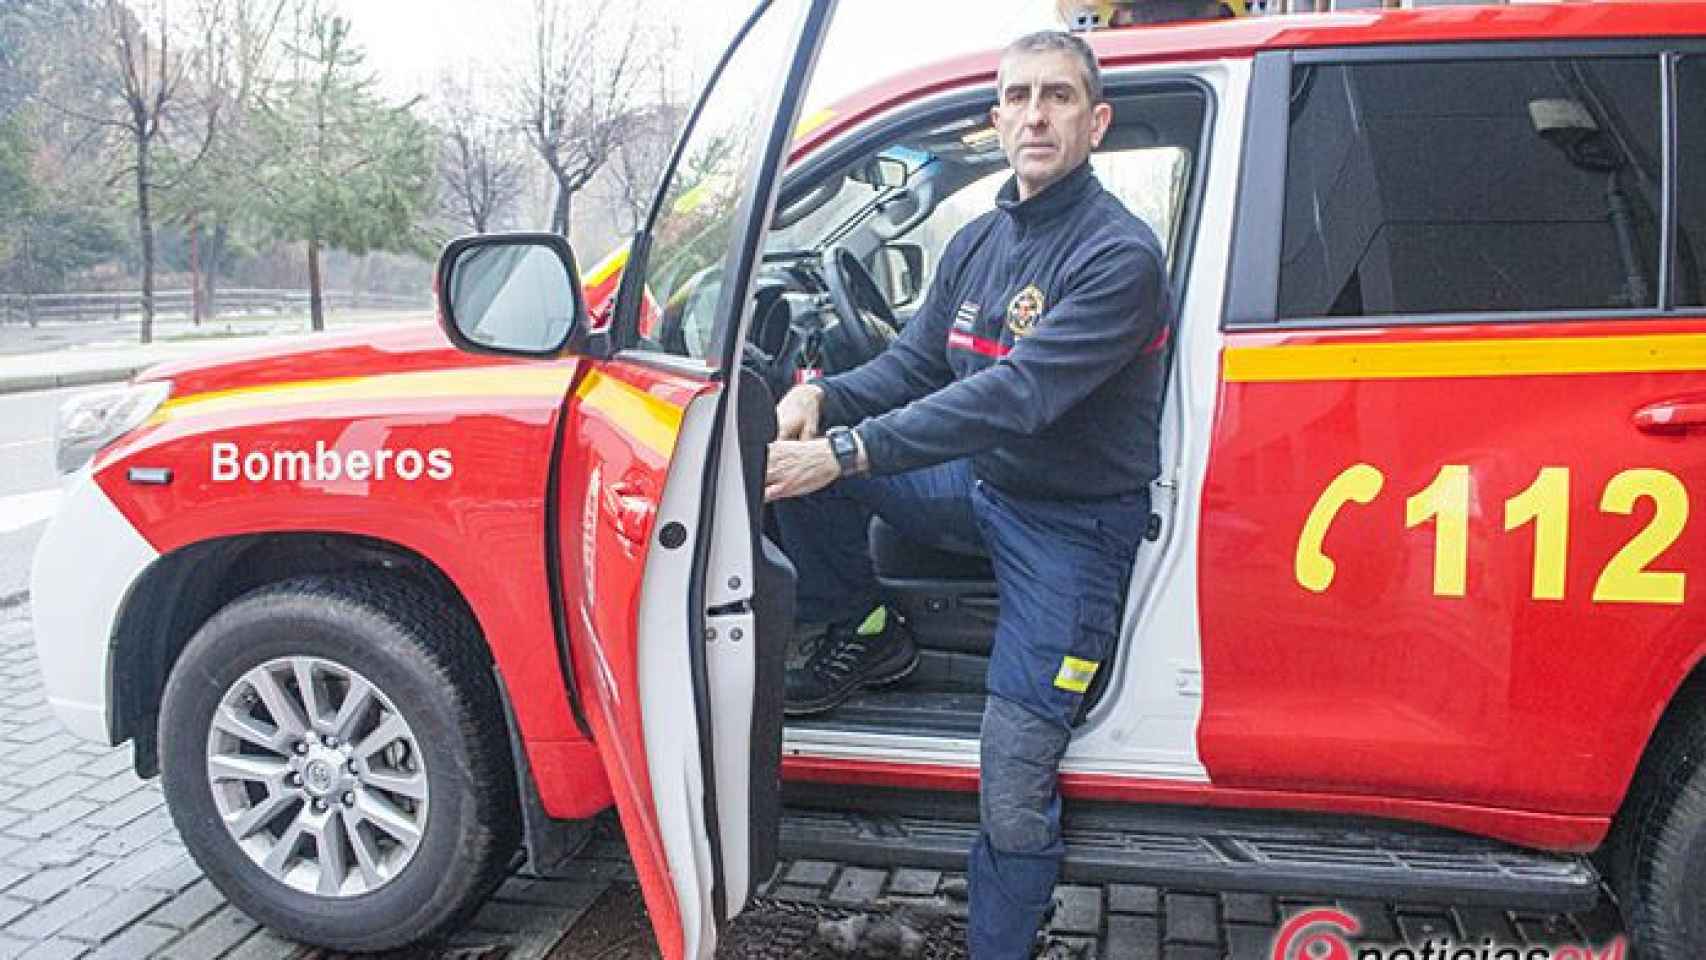 Valladolid-jesus-carlos-bomberos-incendios-fuego-3